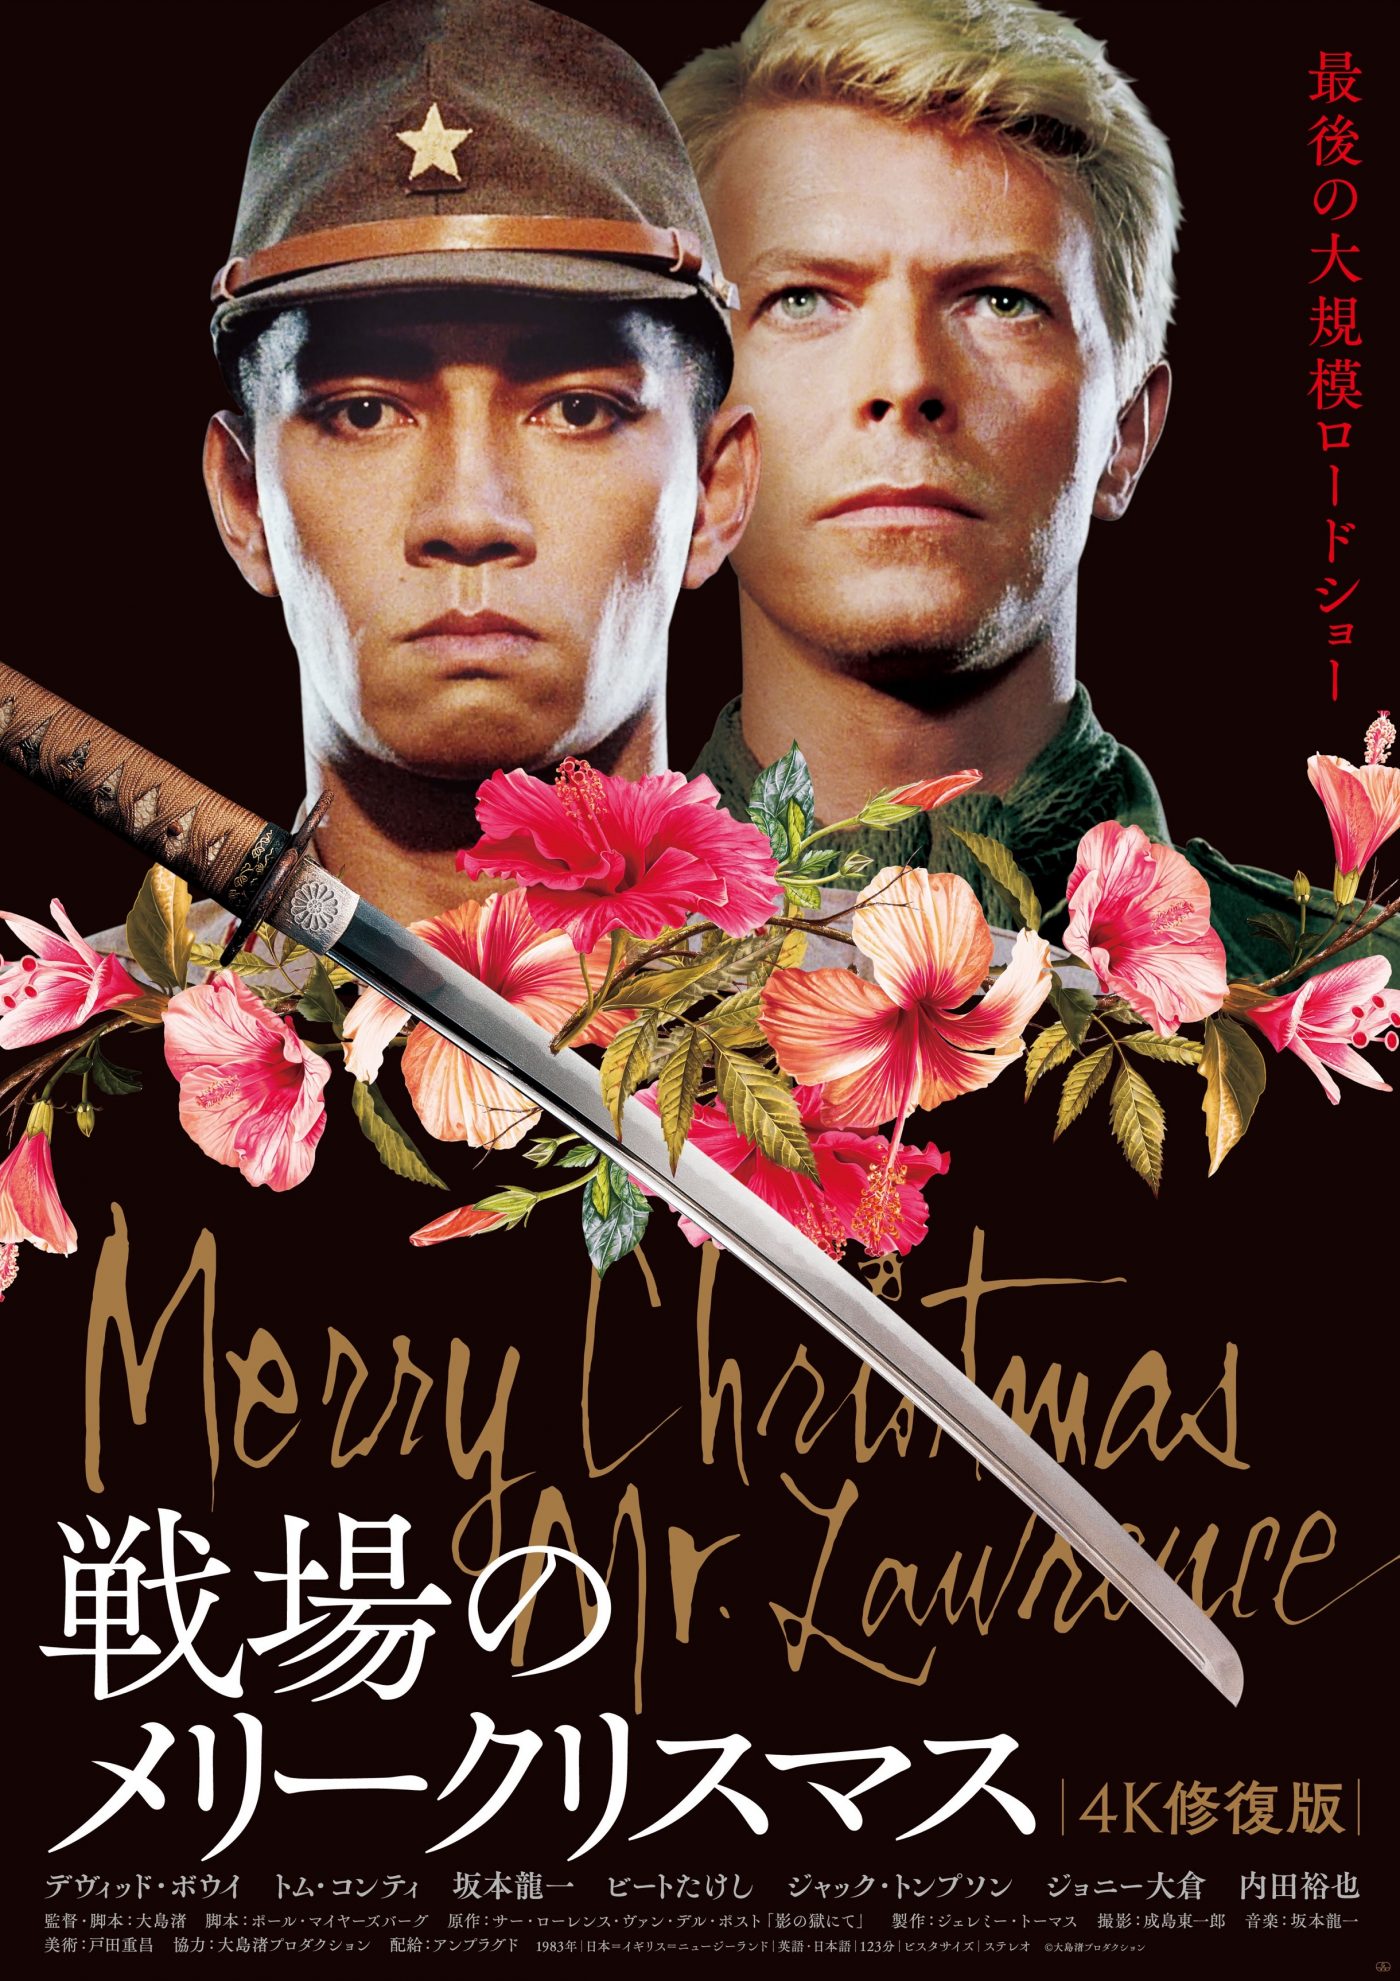 坂本龍一＆デヴィッド・ボウイ出演、映画『戦場のメリークリスマス 4K修復版』“最終リベンジ”上映決定＆特別ビジュアル完成